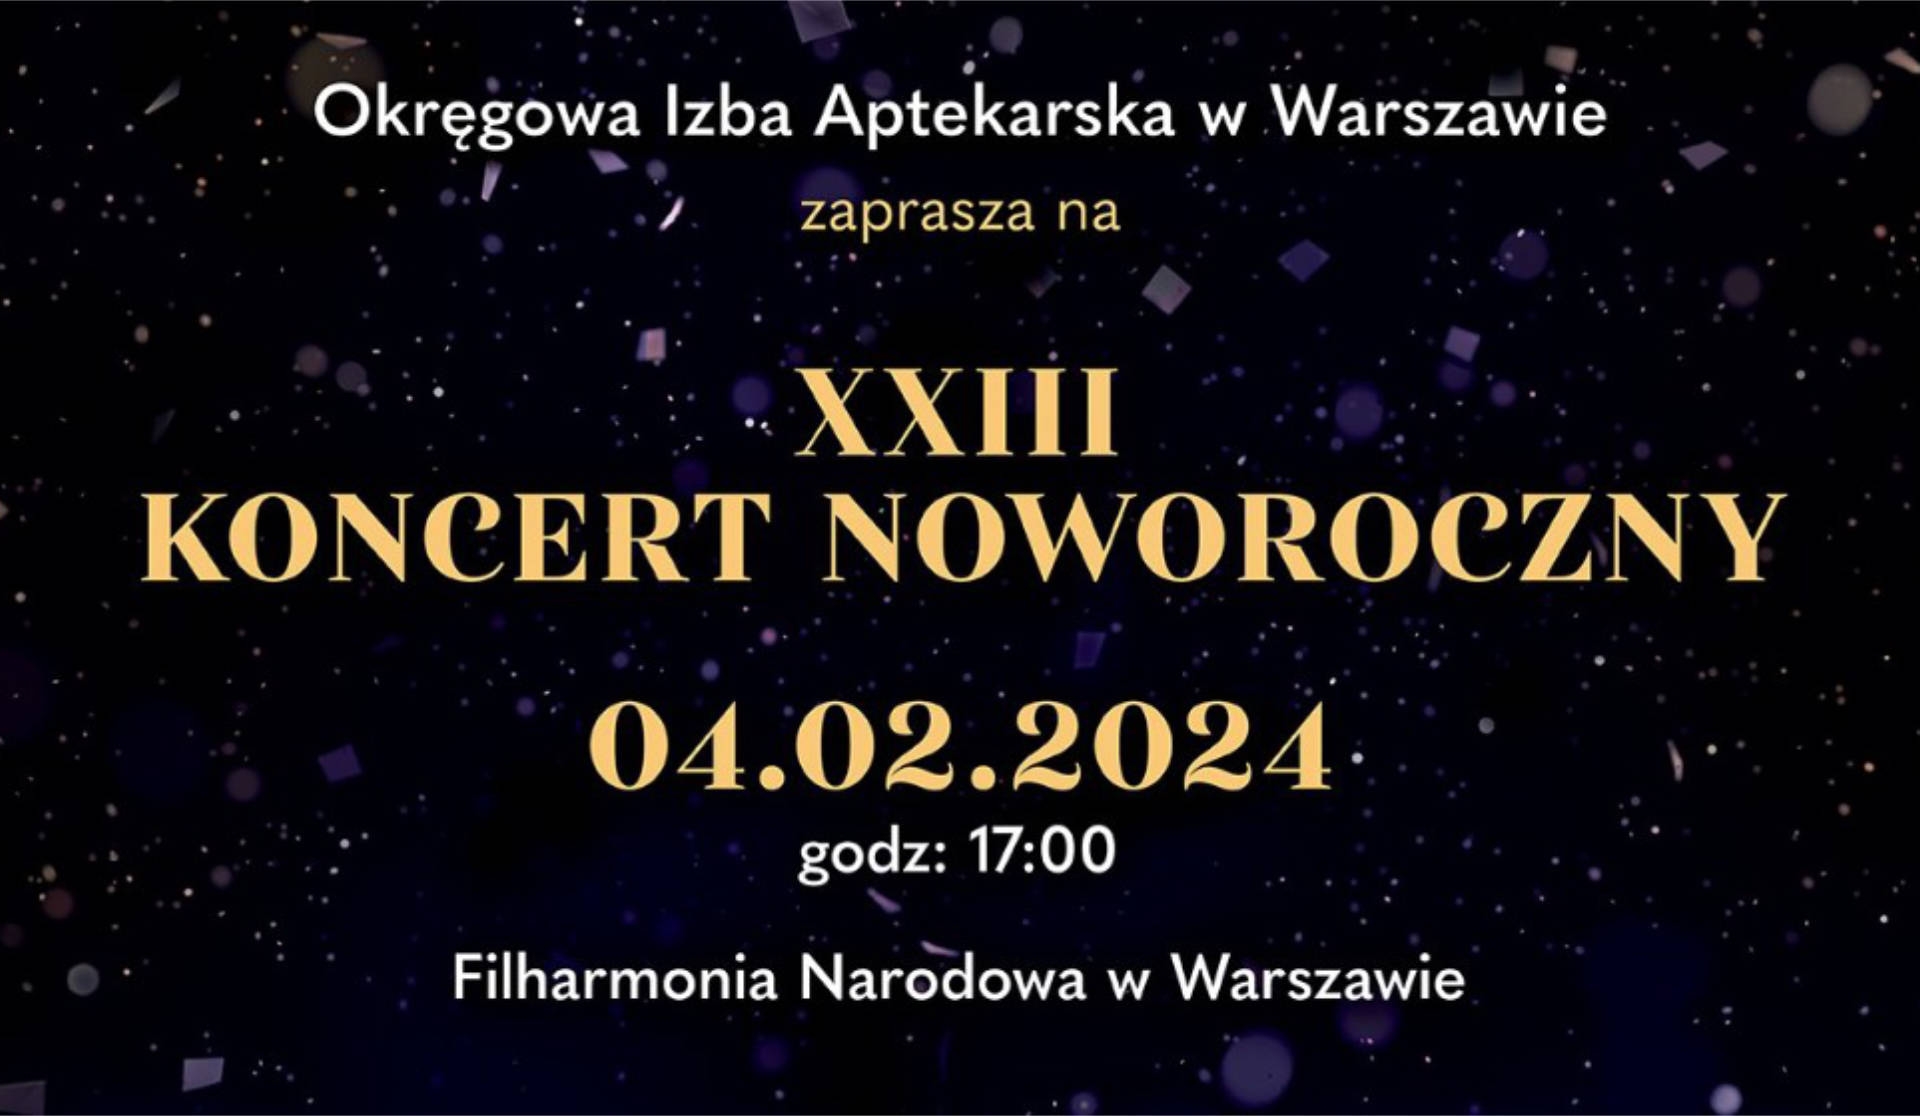 04.02.2024 – XXIII Koncert Noworoczny Okręgowej Izby Aptekarskiej, Warszawa